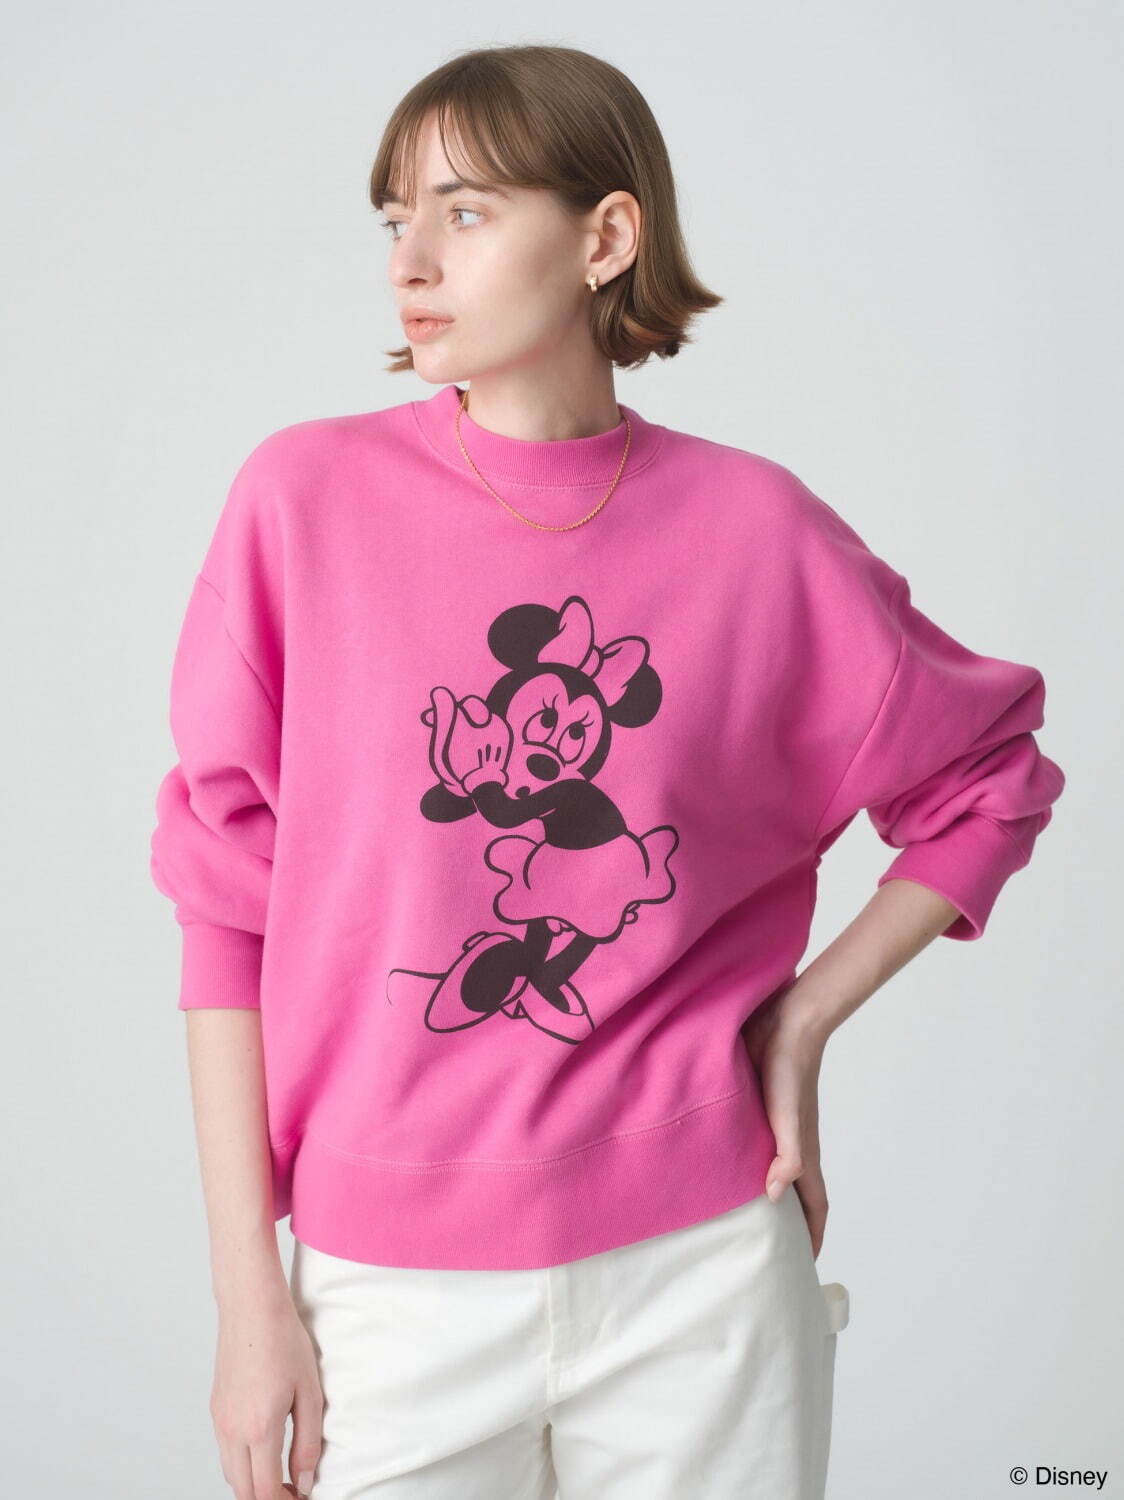 ロンハーマン「ディズニー」プリンセスの“後ろ姿”やミッキーマウス柄